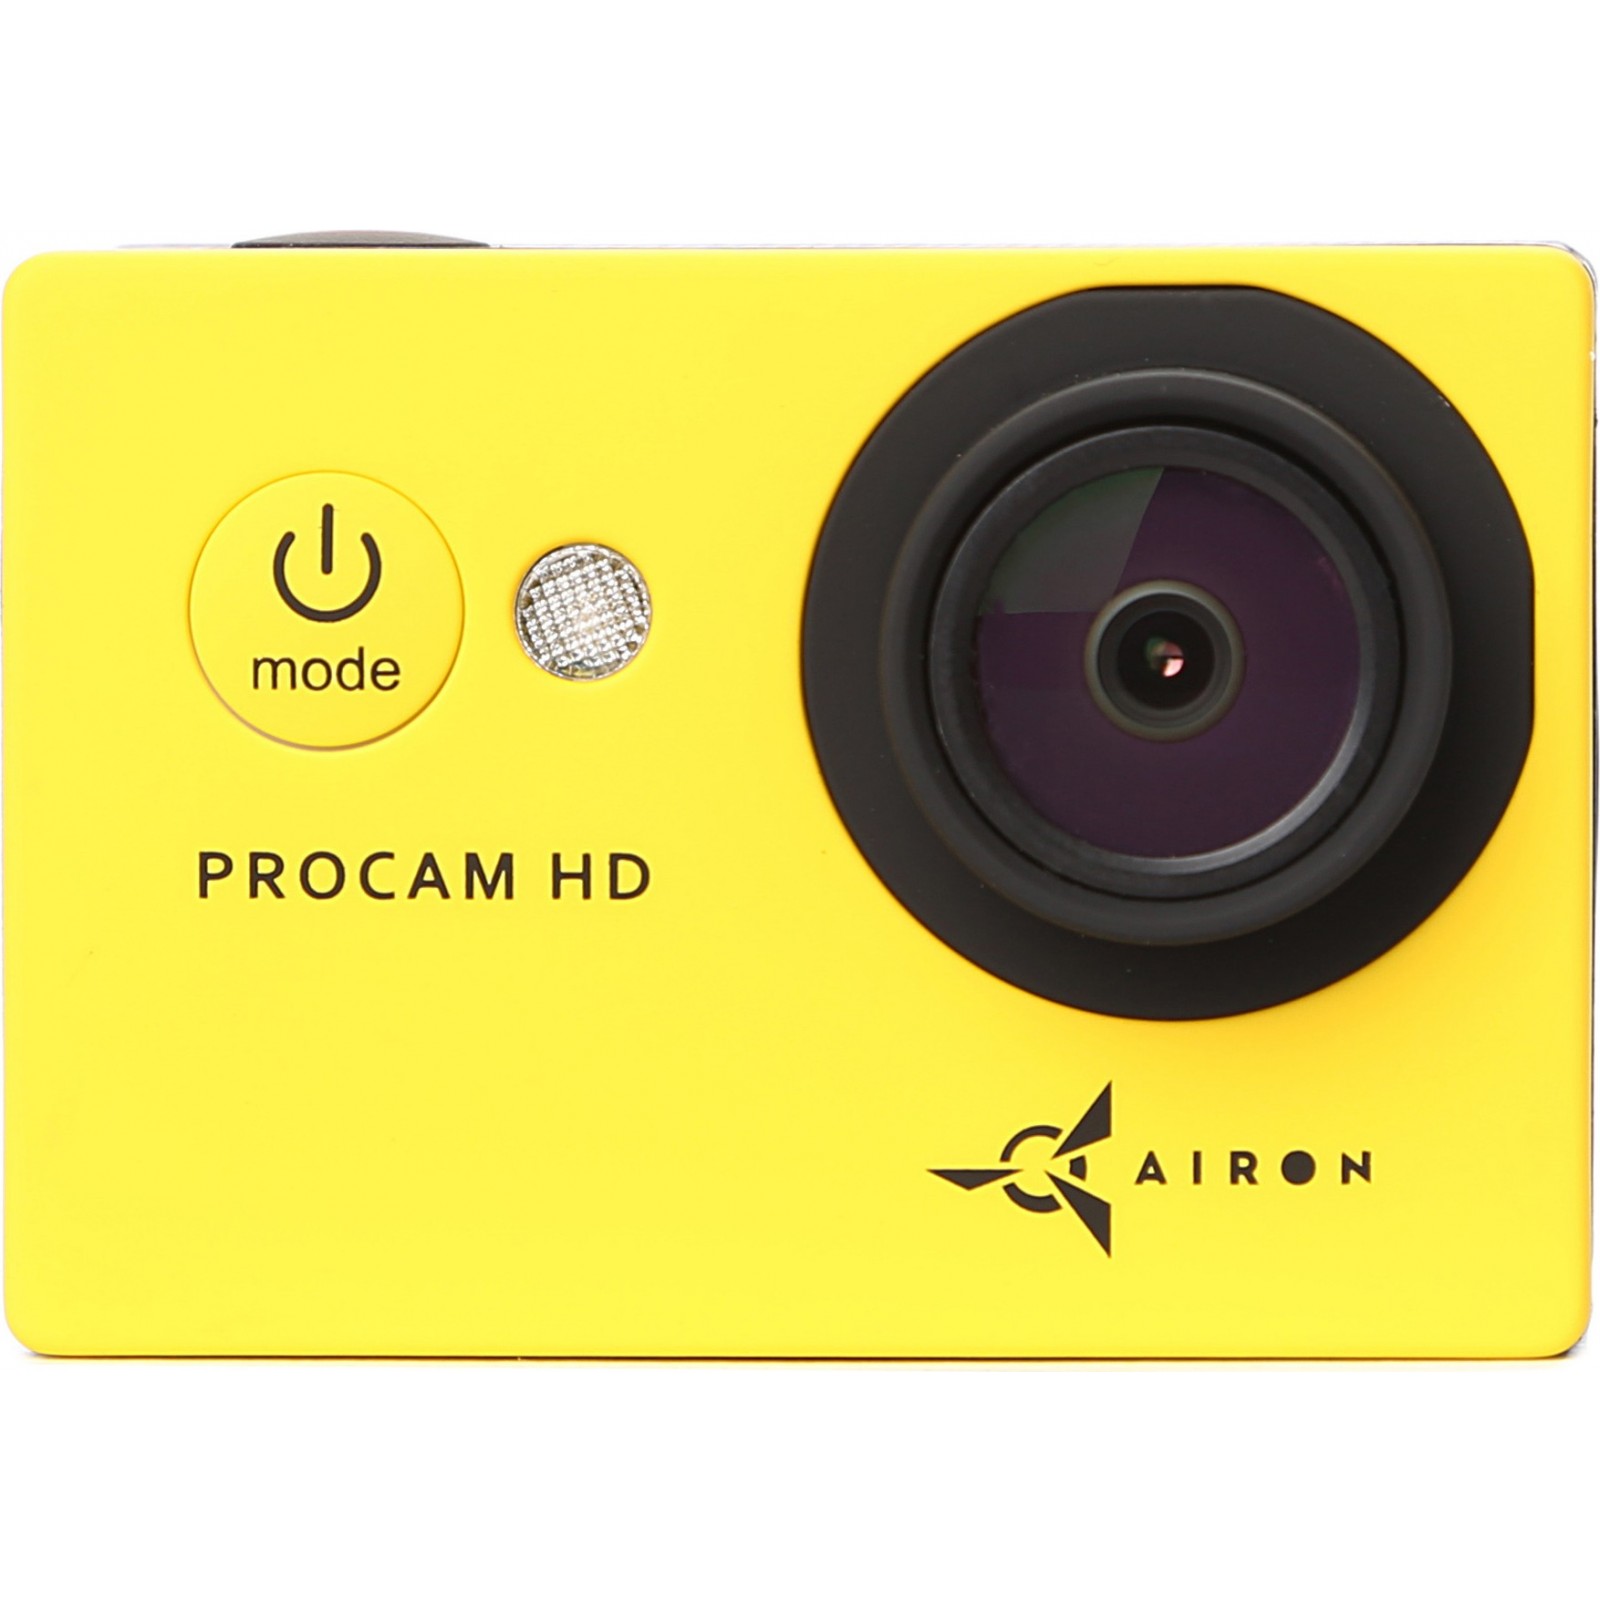 Екшн-камера AIRON ProCam HD yellow (4285234589562) в Києві